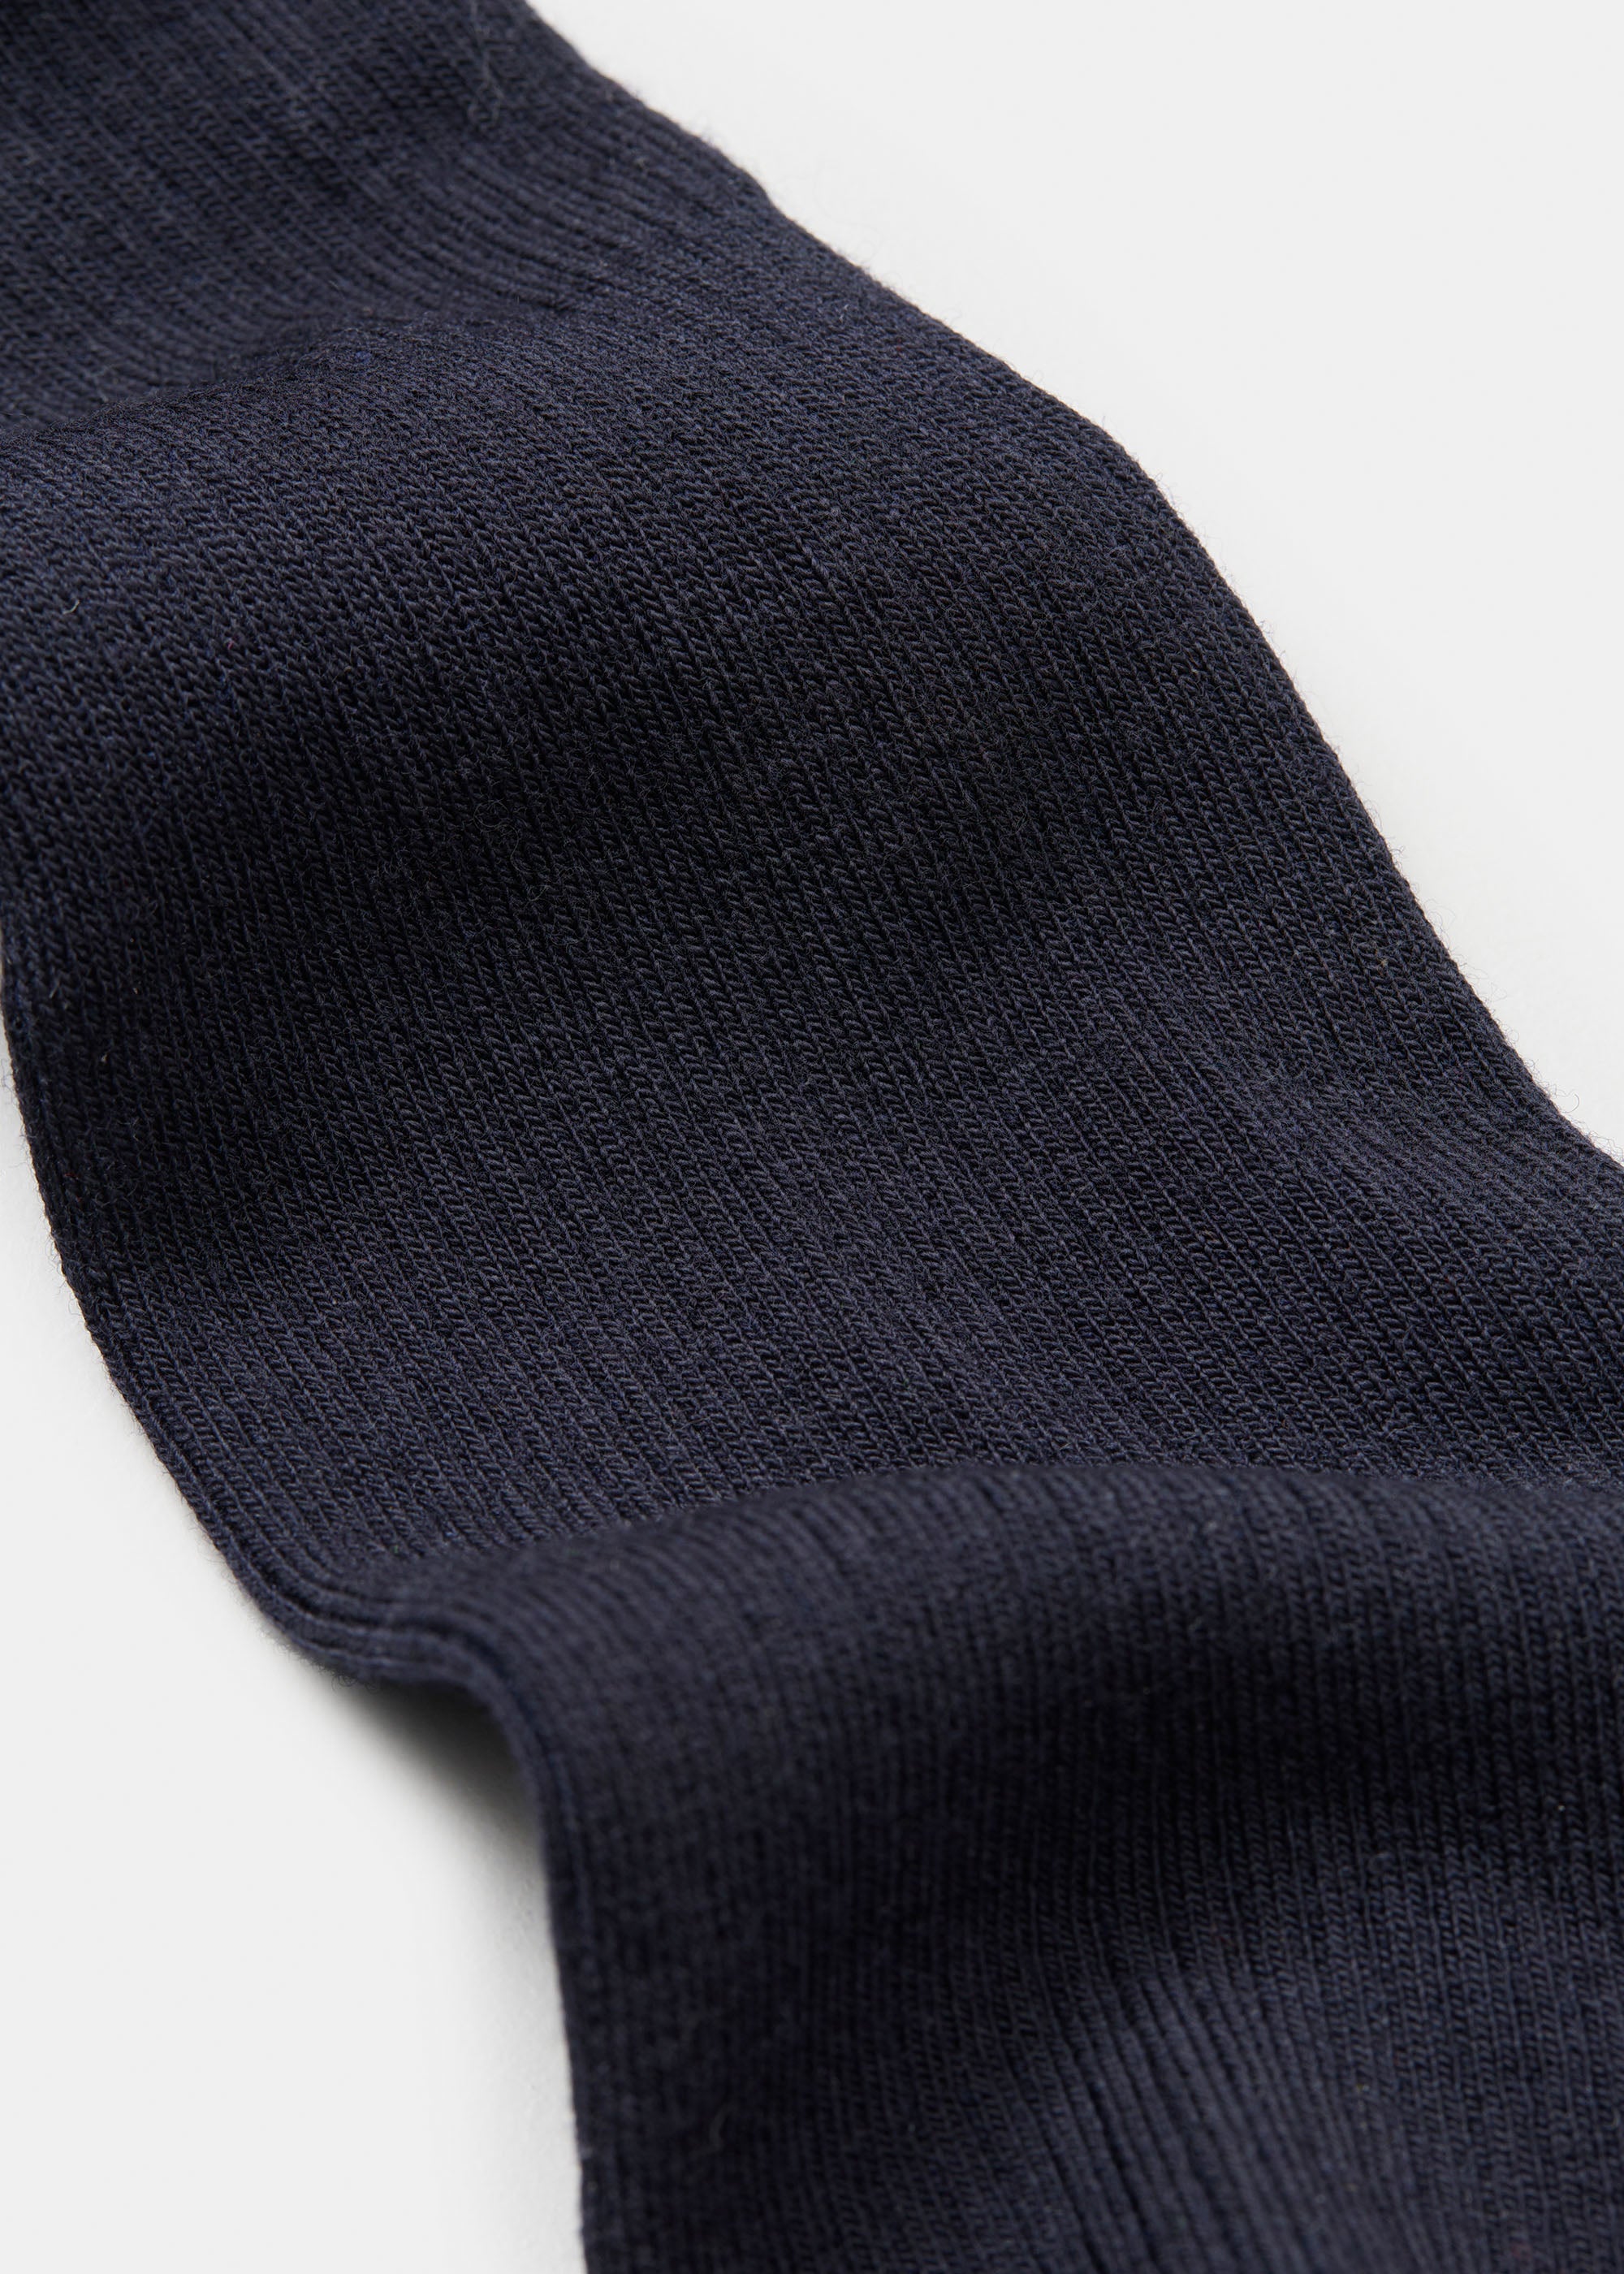 Wool rib socks | Navy